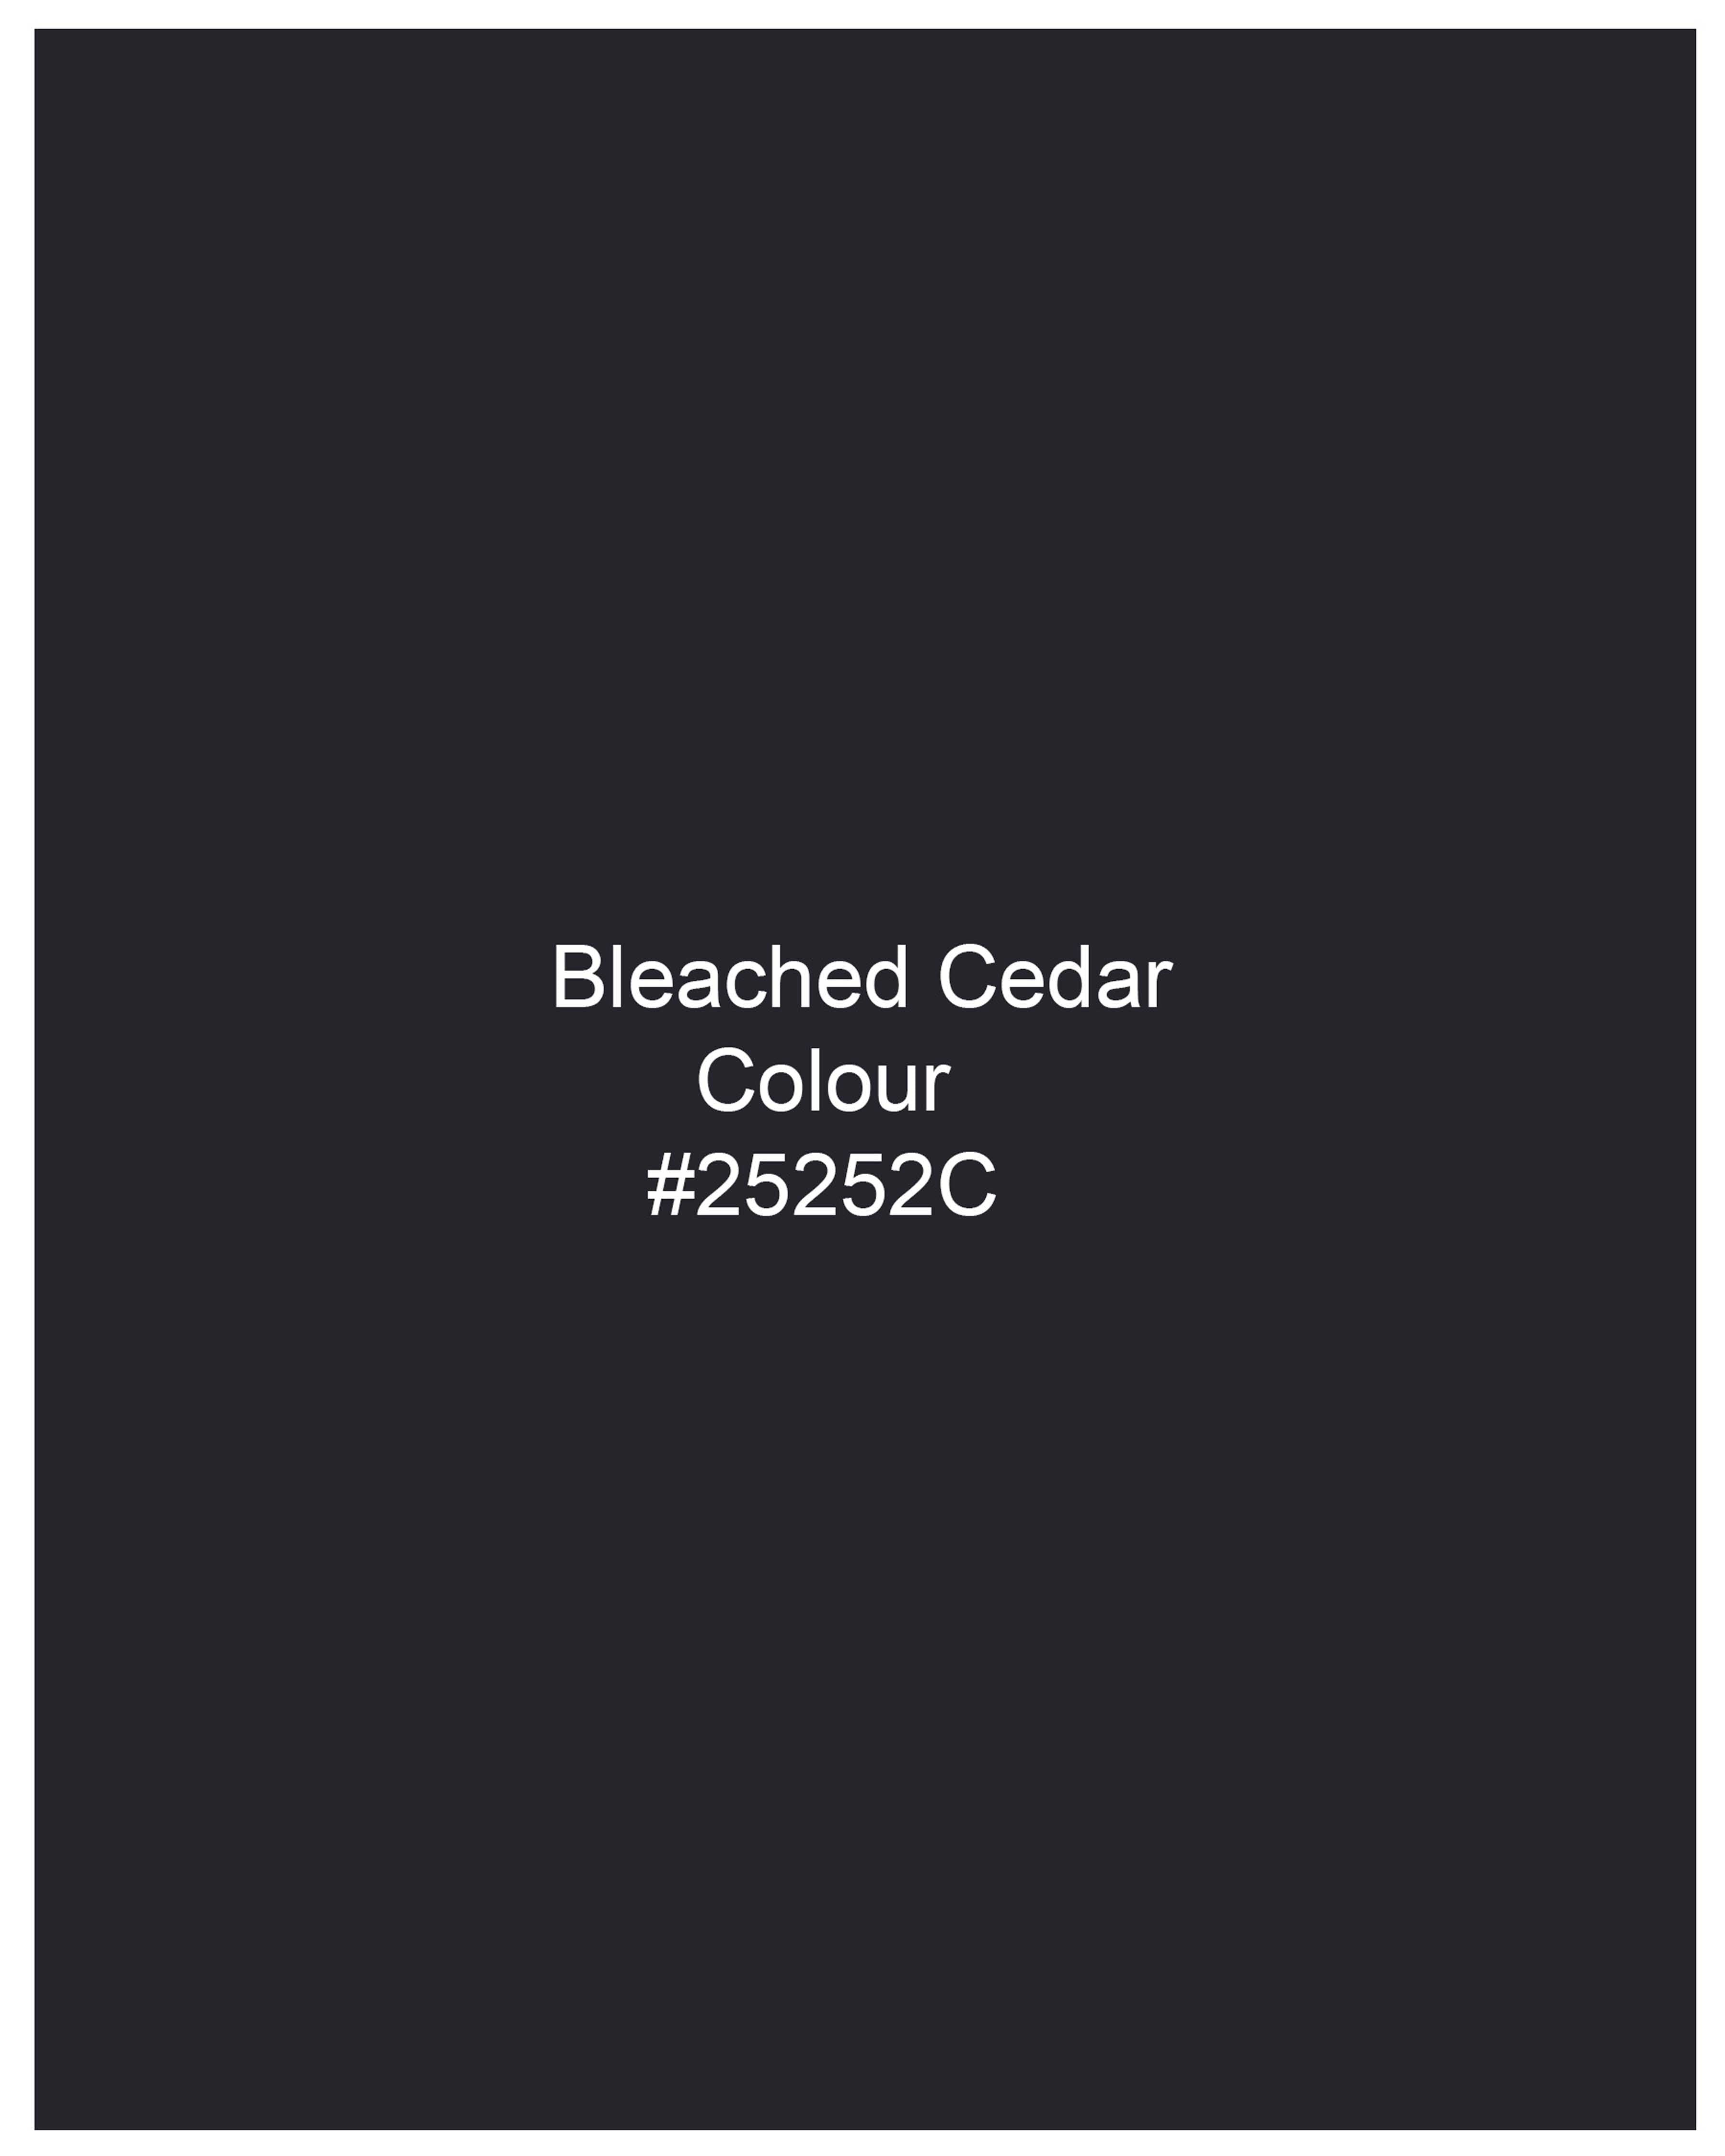 Bleached Cedar Blue Waistcoat V2051-36, V2051-38, V2051-40, V2051-42, V2051-44, V2051-46, V2051-48, V2051-50, V2051-52, V2051-54, V2051-56, V2051-58, V2051-60